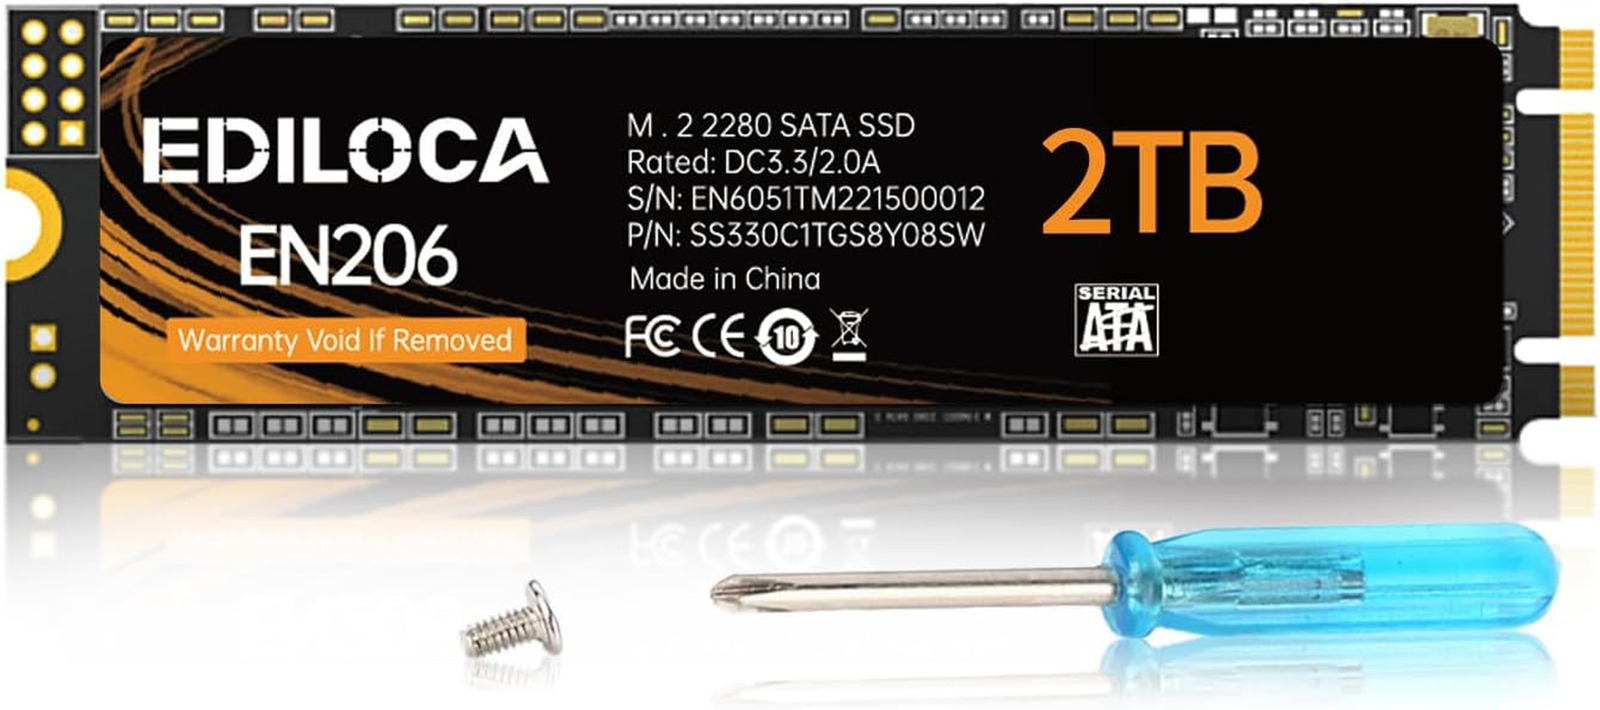 EN206 2TB SSD M.2 SATA 3D NAND, M.2 2280 SATA III 6Gb/S SSD Internal Hard Drive,